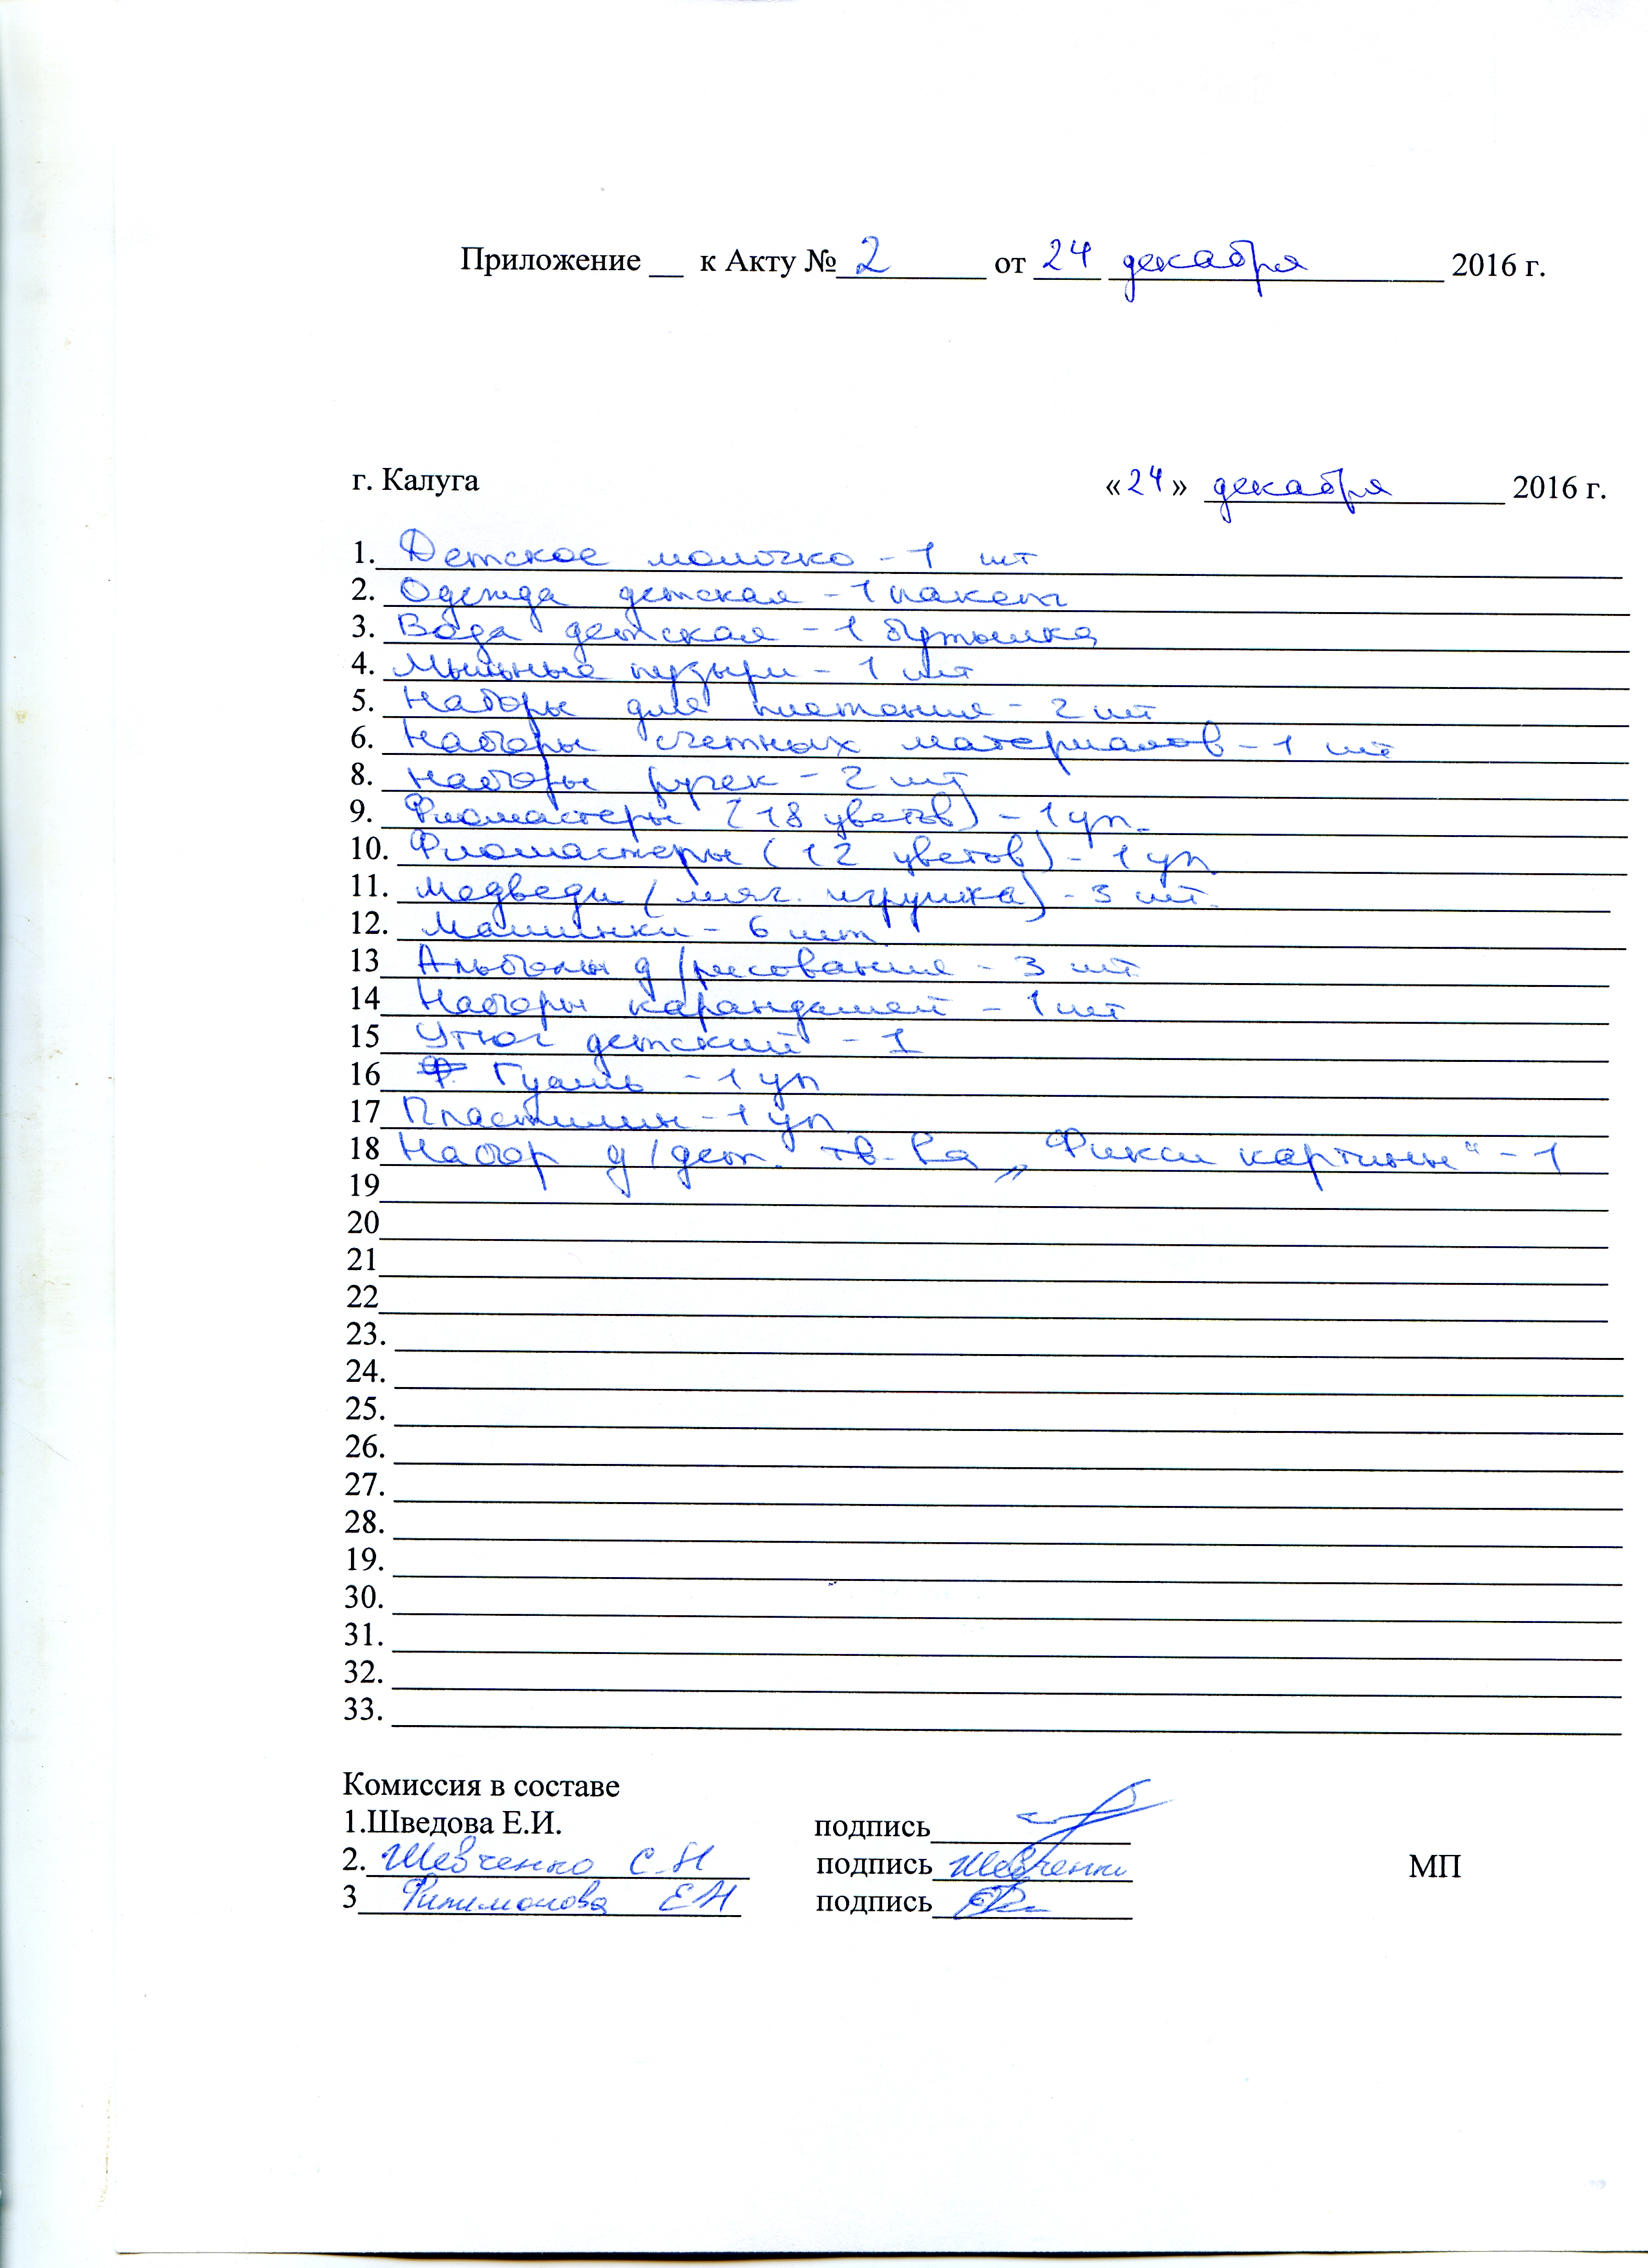 Приложение Акт 2 Гагарина 24 декабря 2016297